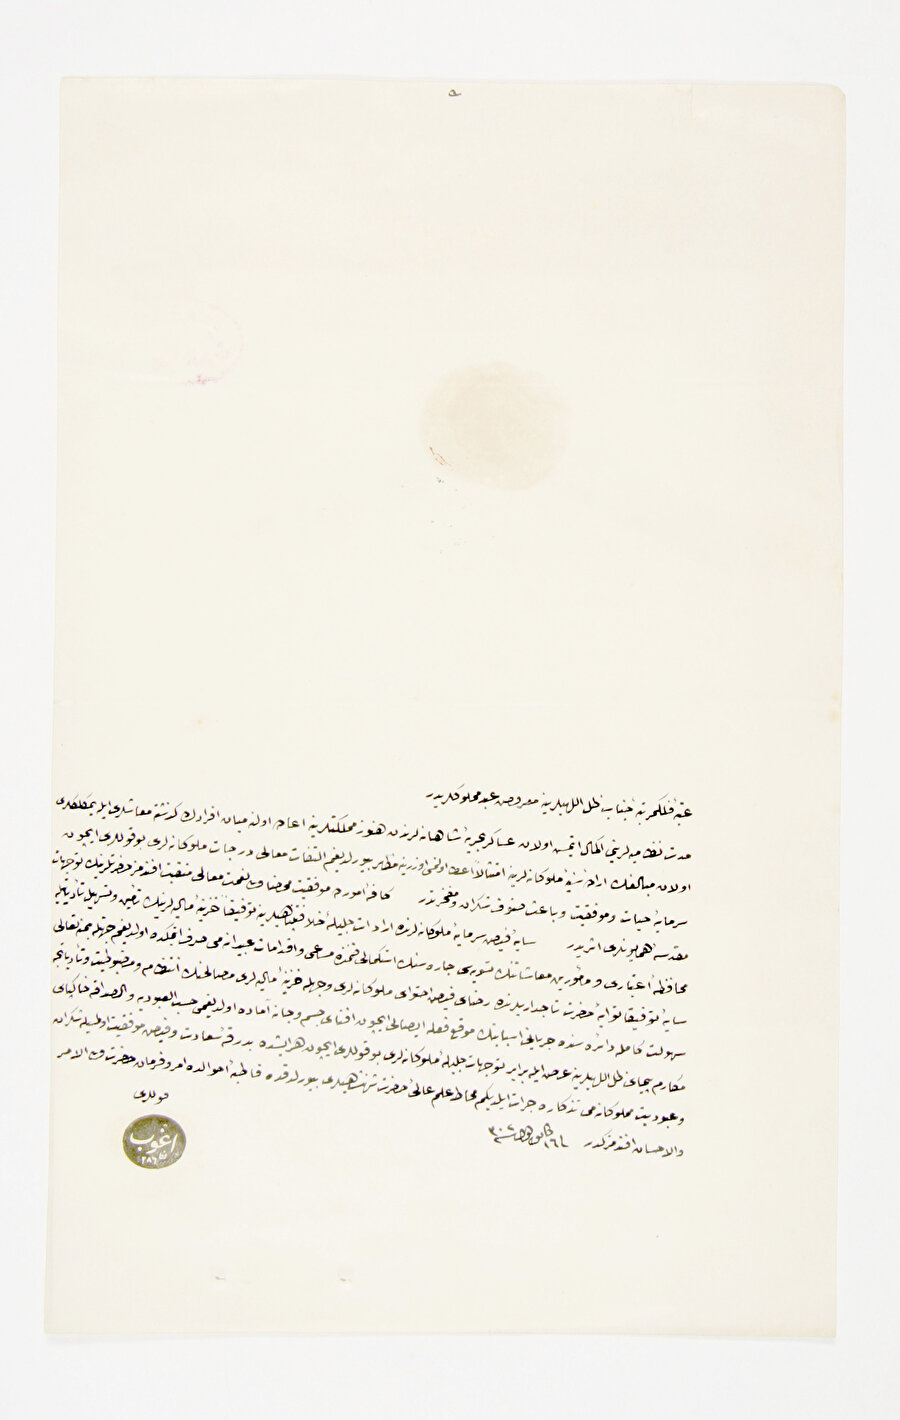 » Teşekkür niyetine Maliye Nazırı tayin edilmesinden dolayı Agop Paşa’nın Sultan Abdülhamid’e yazdığı teşekkür mektubu. 